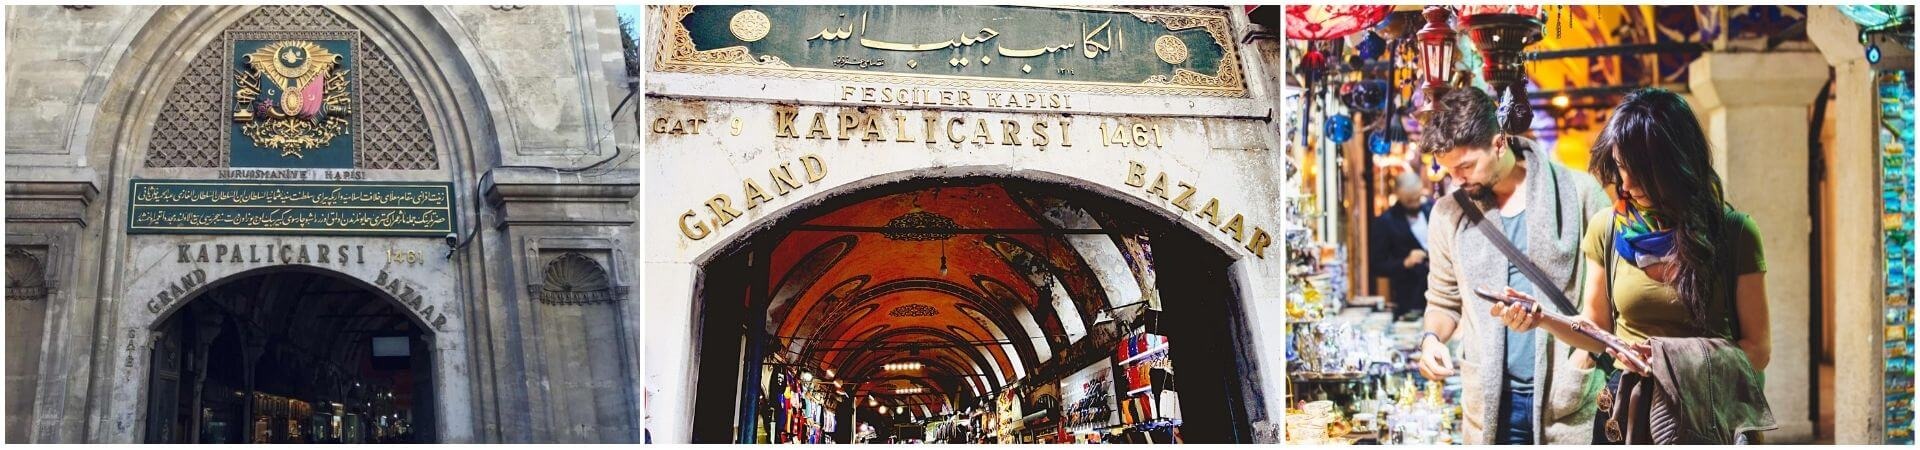 Visita guiada al Gran Bazar de Estambul